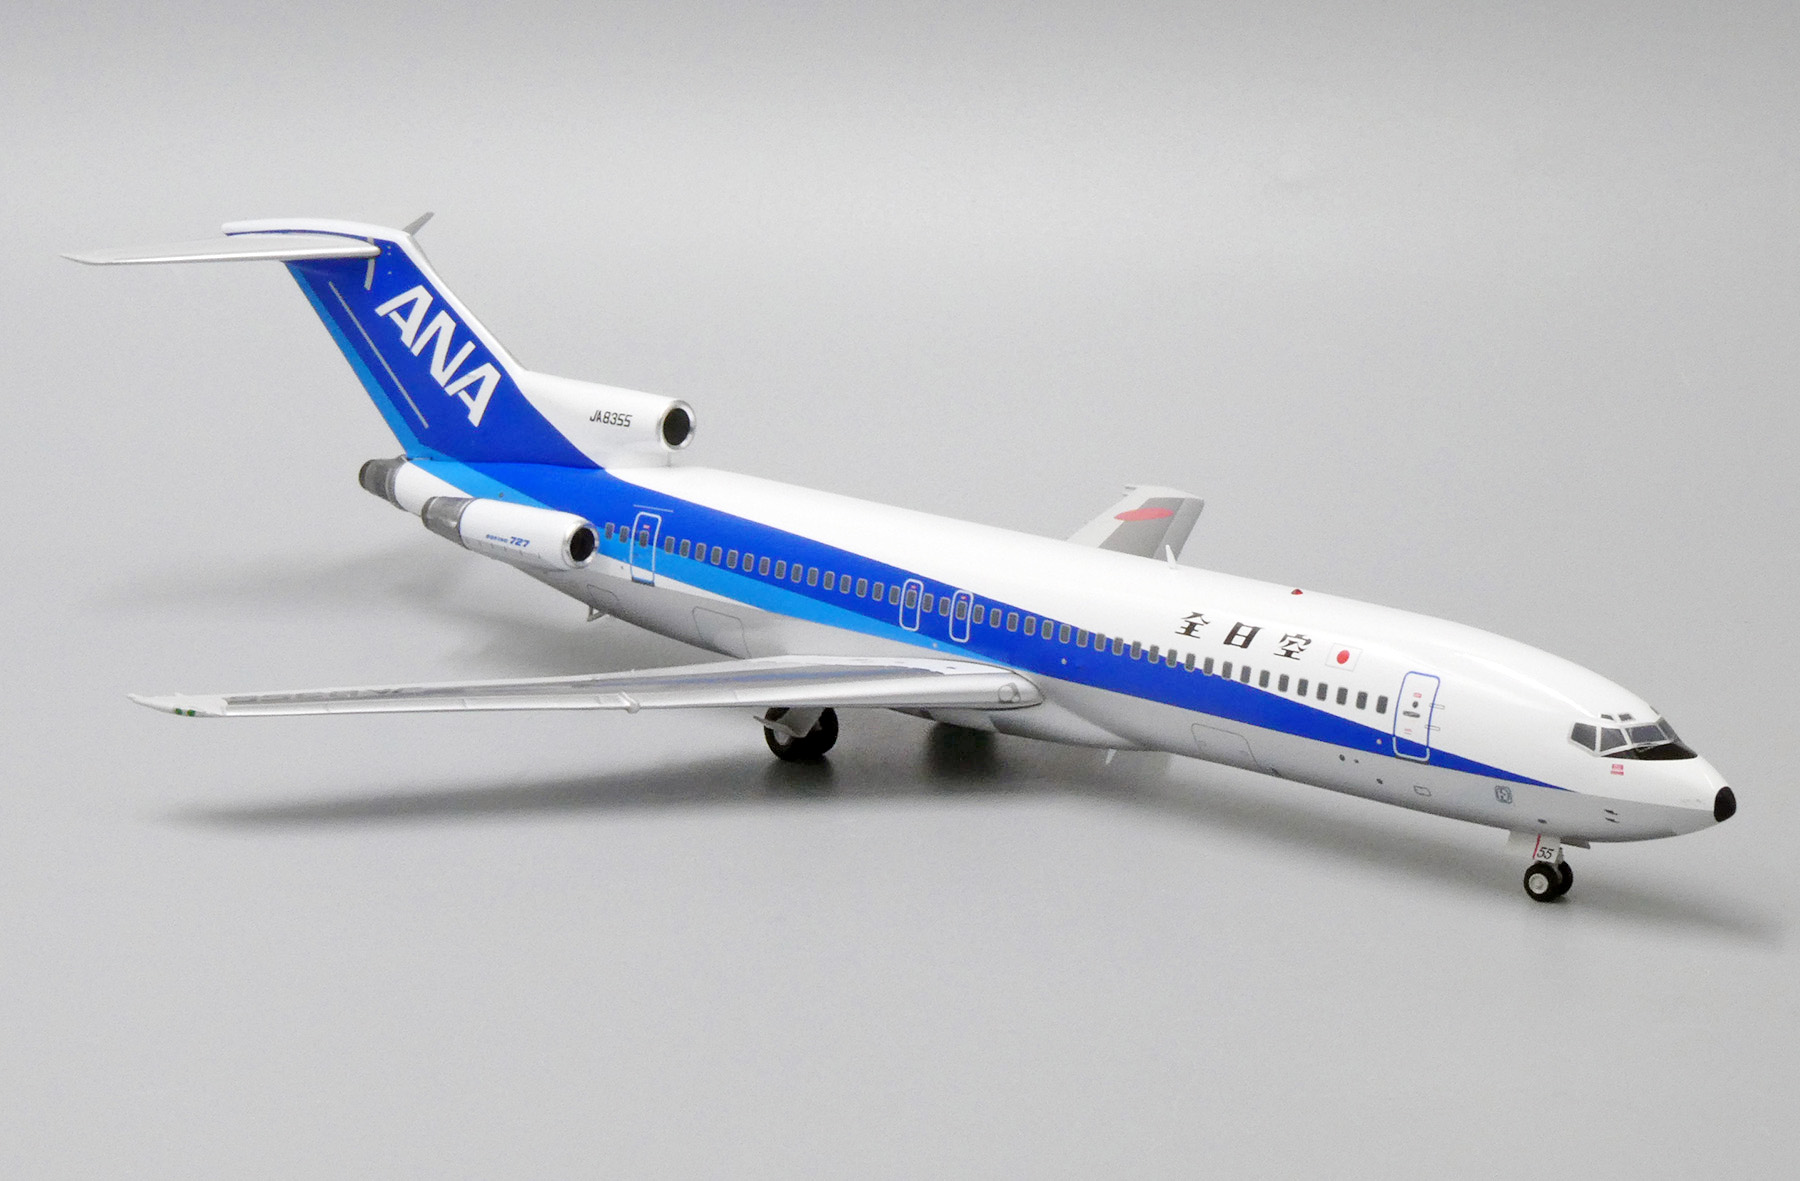 All Nippon Airways Boeing 727-200